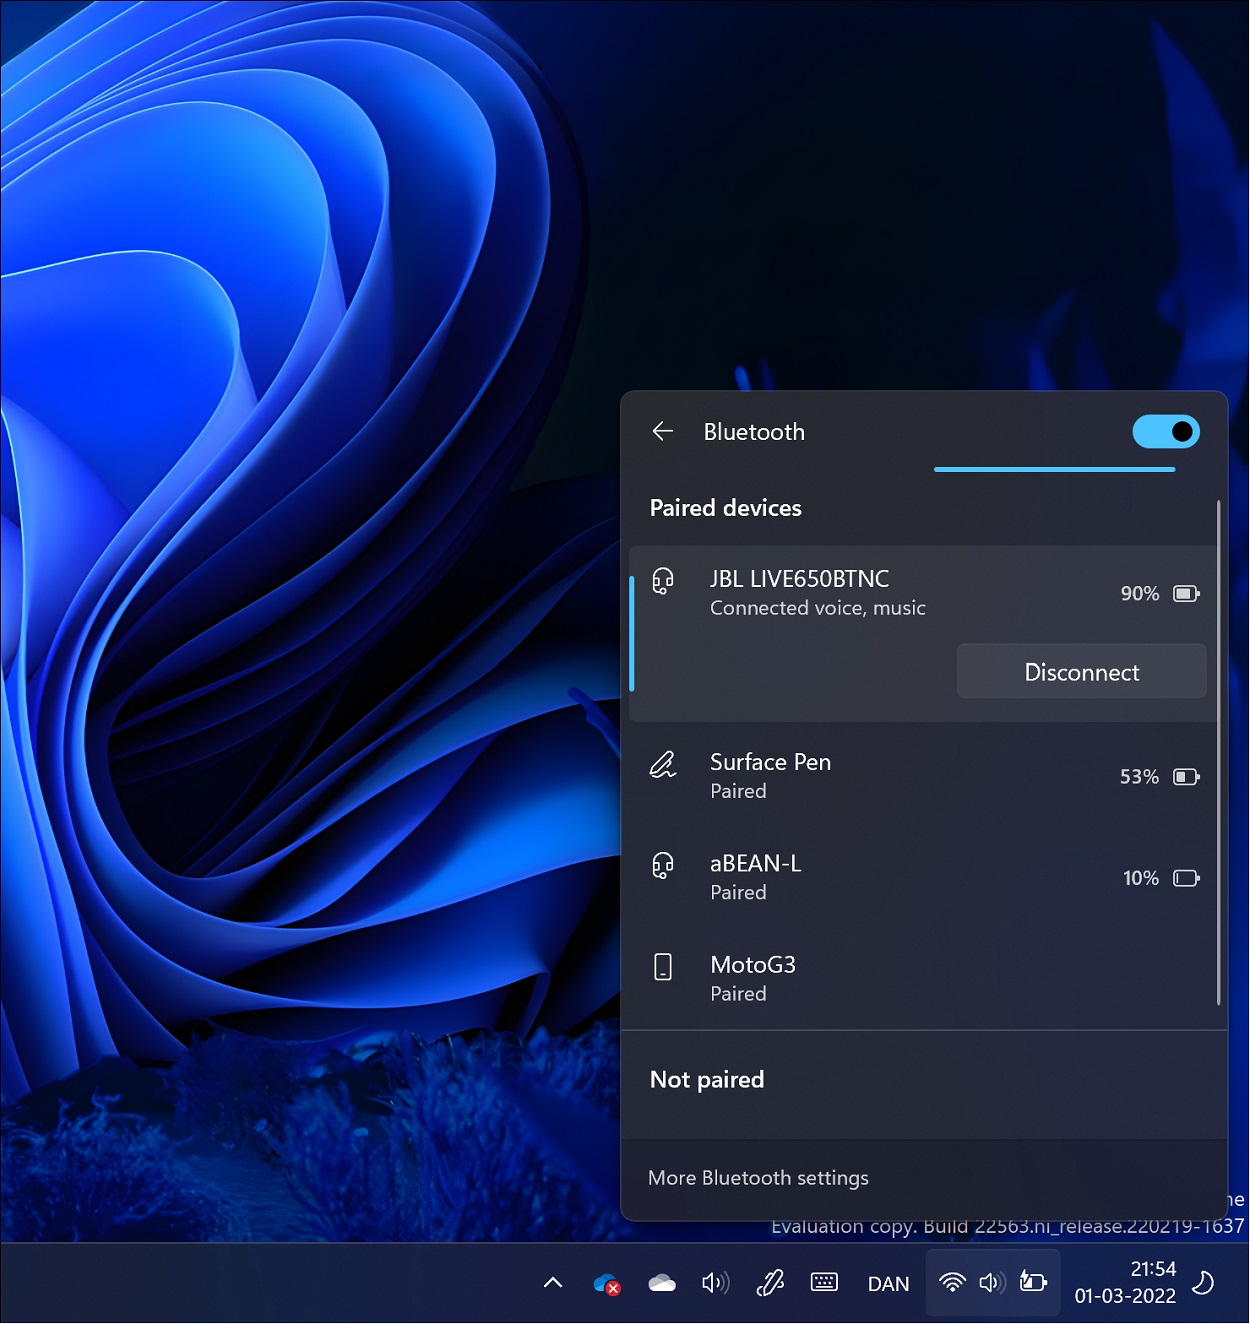 windows 11 version 23h2 update download